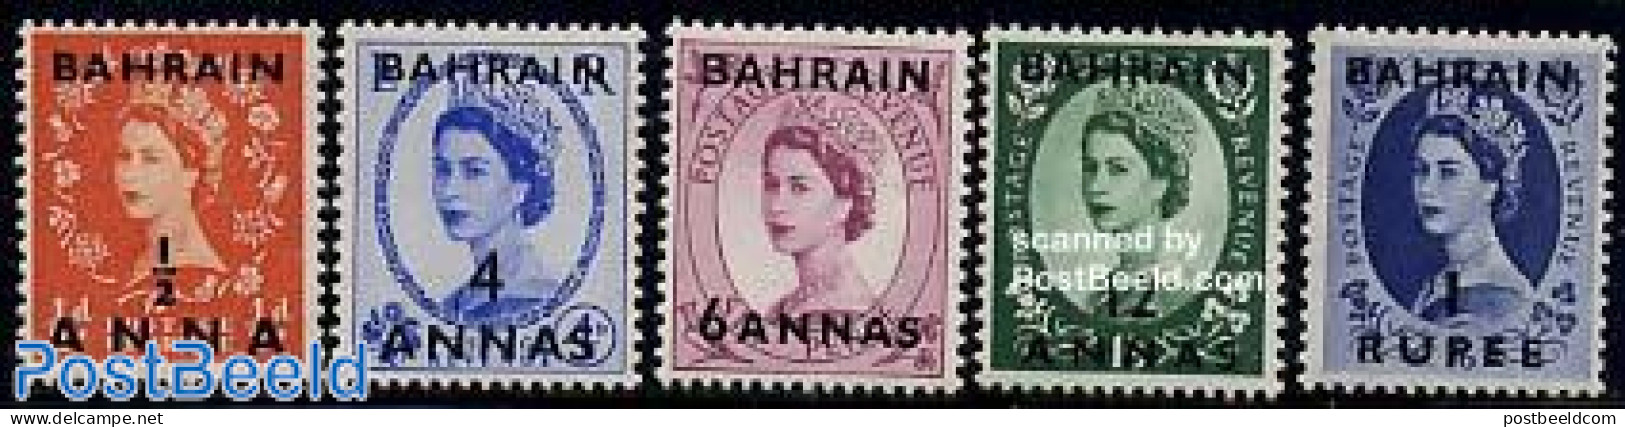 Bahrain 1956 Definitives 5v, Mint NH - Bahrain (1965-...)